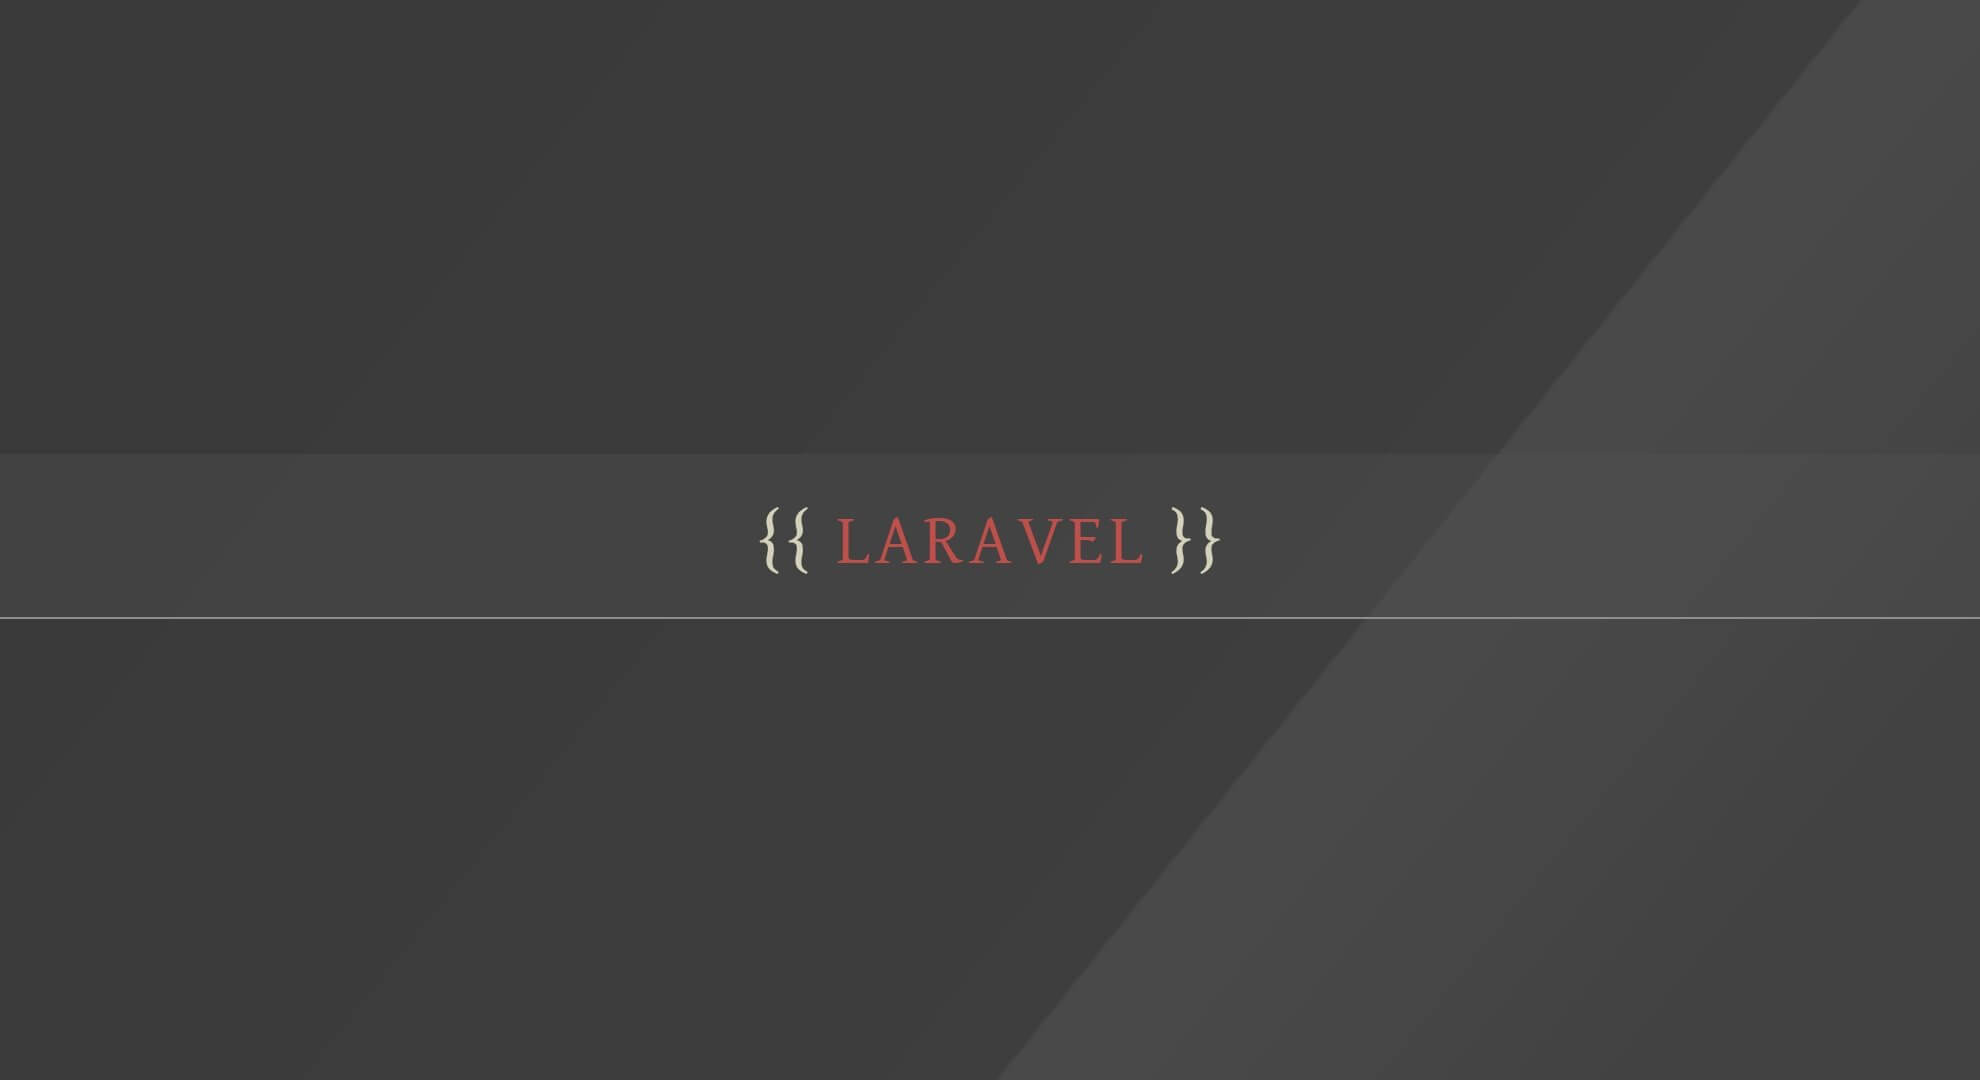 Nếu bạn đang sử dụng Laravel cho các dự án của mình, thì hình nền Laravel sẽ là một sự lựa chọn hoàn hảo để thay đổi giao diện màn hình làm việc của bạn. Hãy khám phá ngay những thiết kế đẹp mắt này!